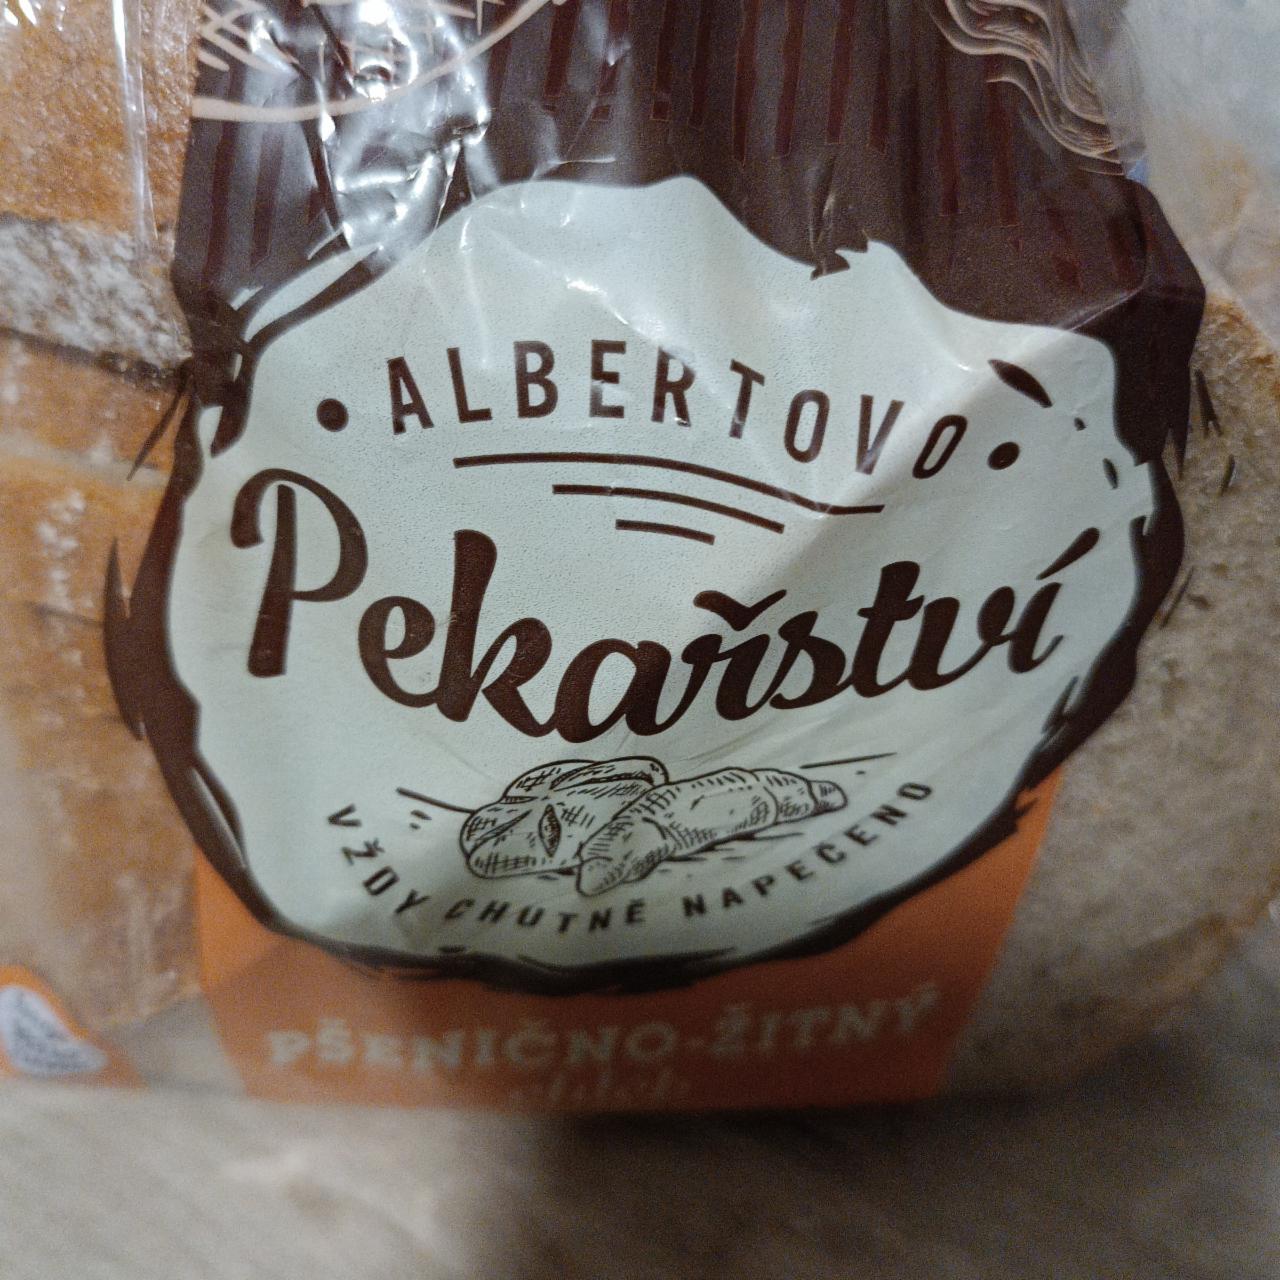 Fotografie - Pšenično-žitný chléb Albertovo pekařství